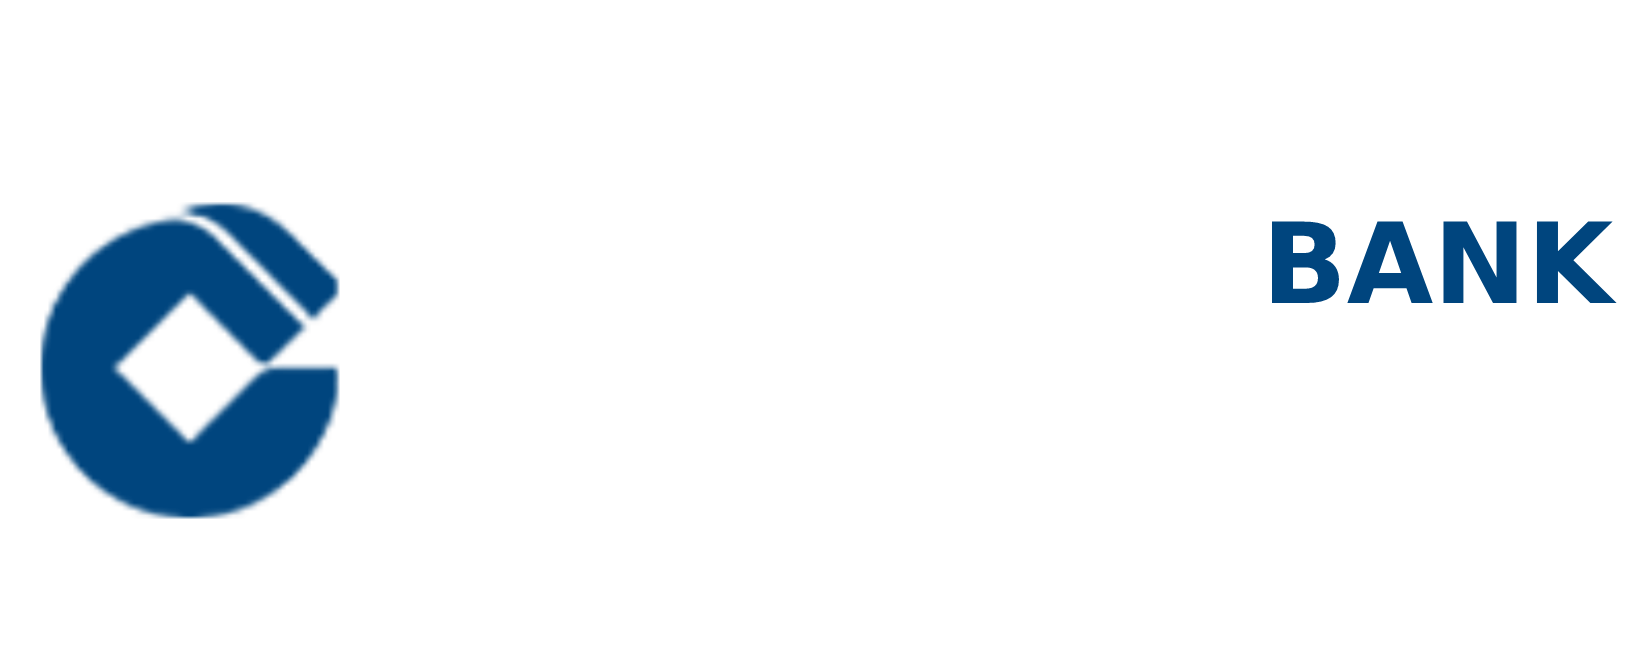 Capital Gateway Bank